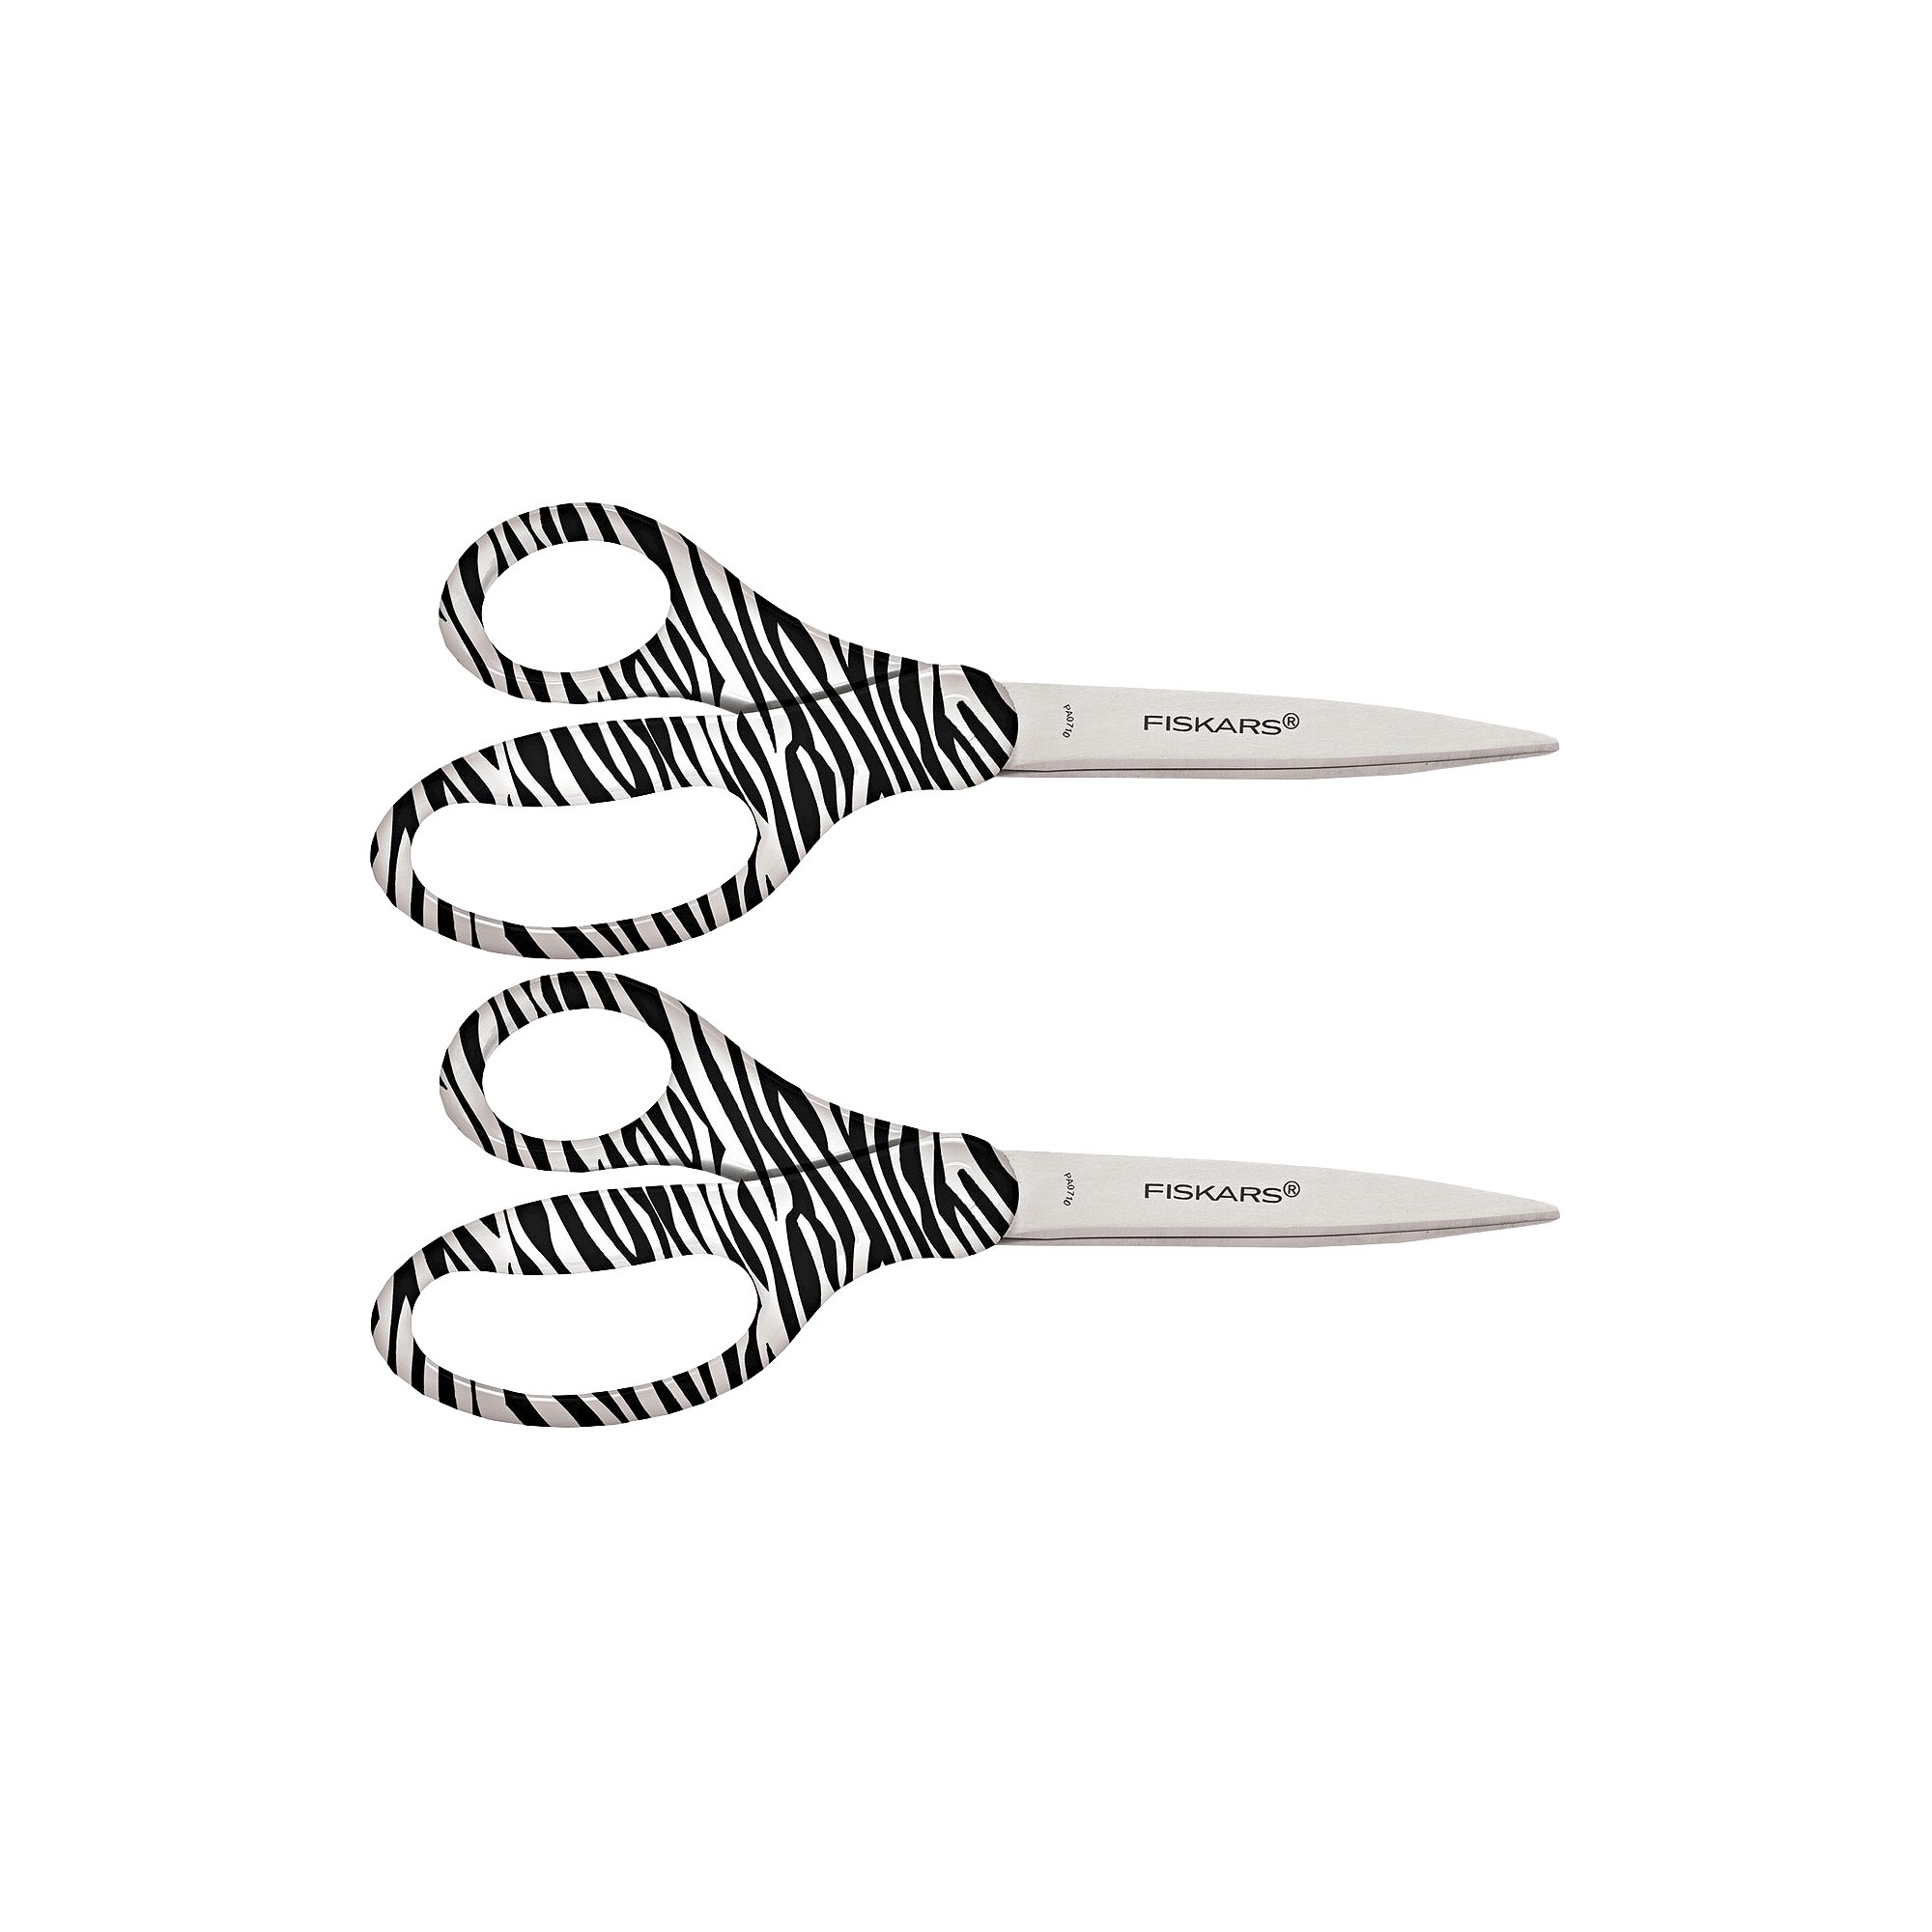 'Fiskars Scissors 8'' Pointed - Black/White striped - 2 Pack, White Black'